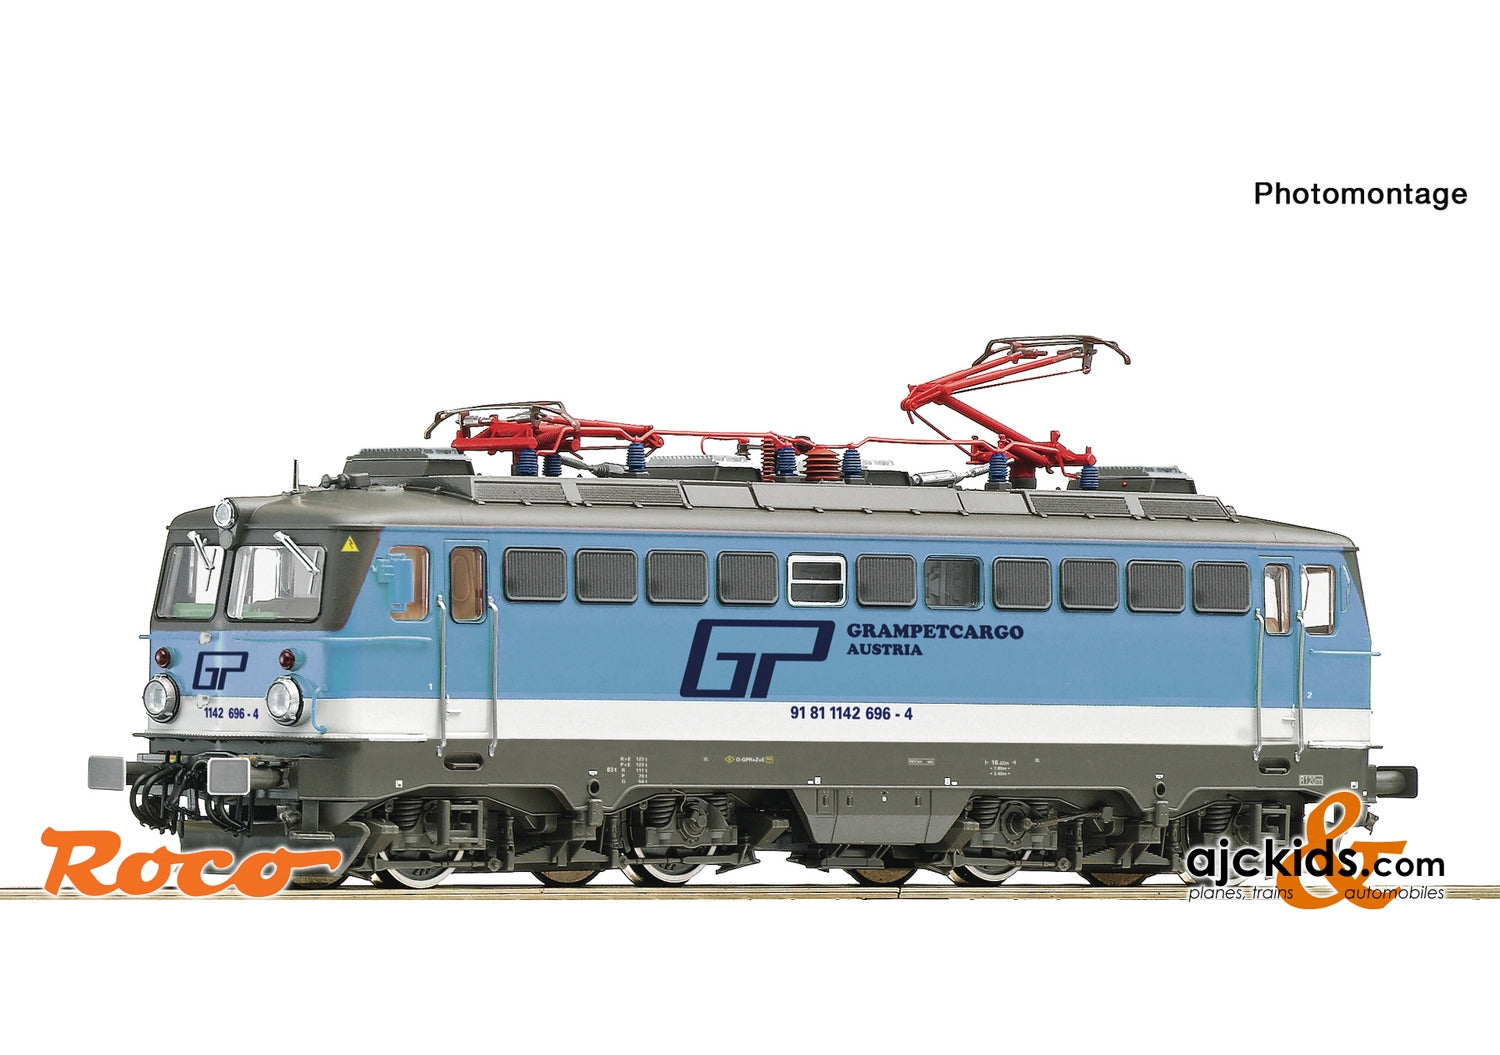 Roco 73479 - Electric locomotive 1142 696-4